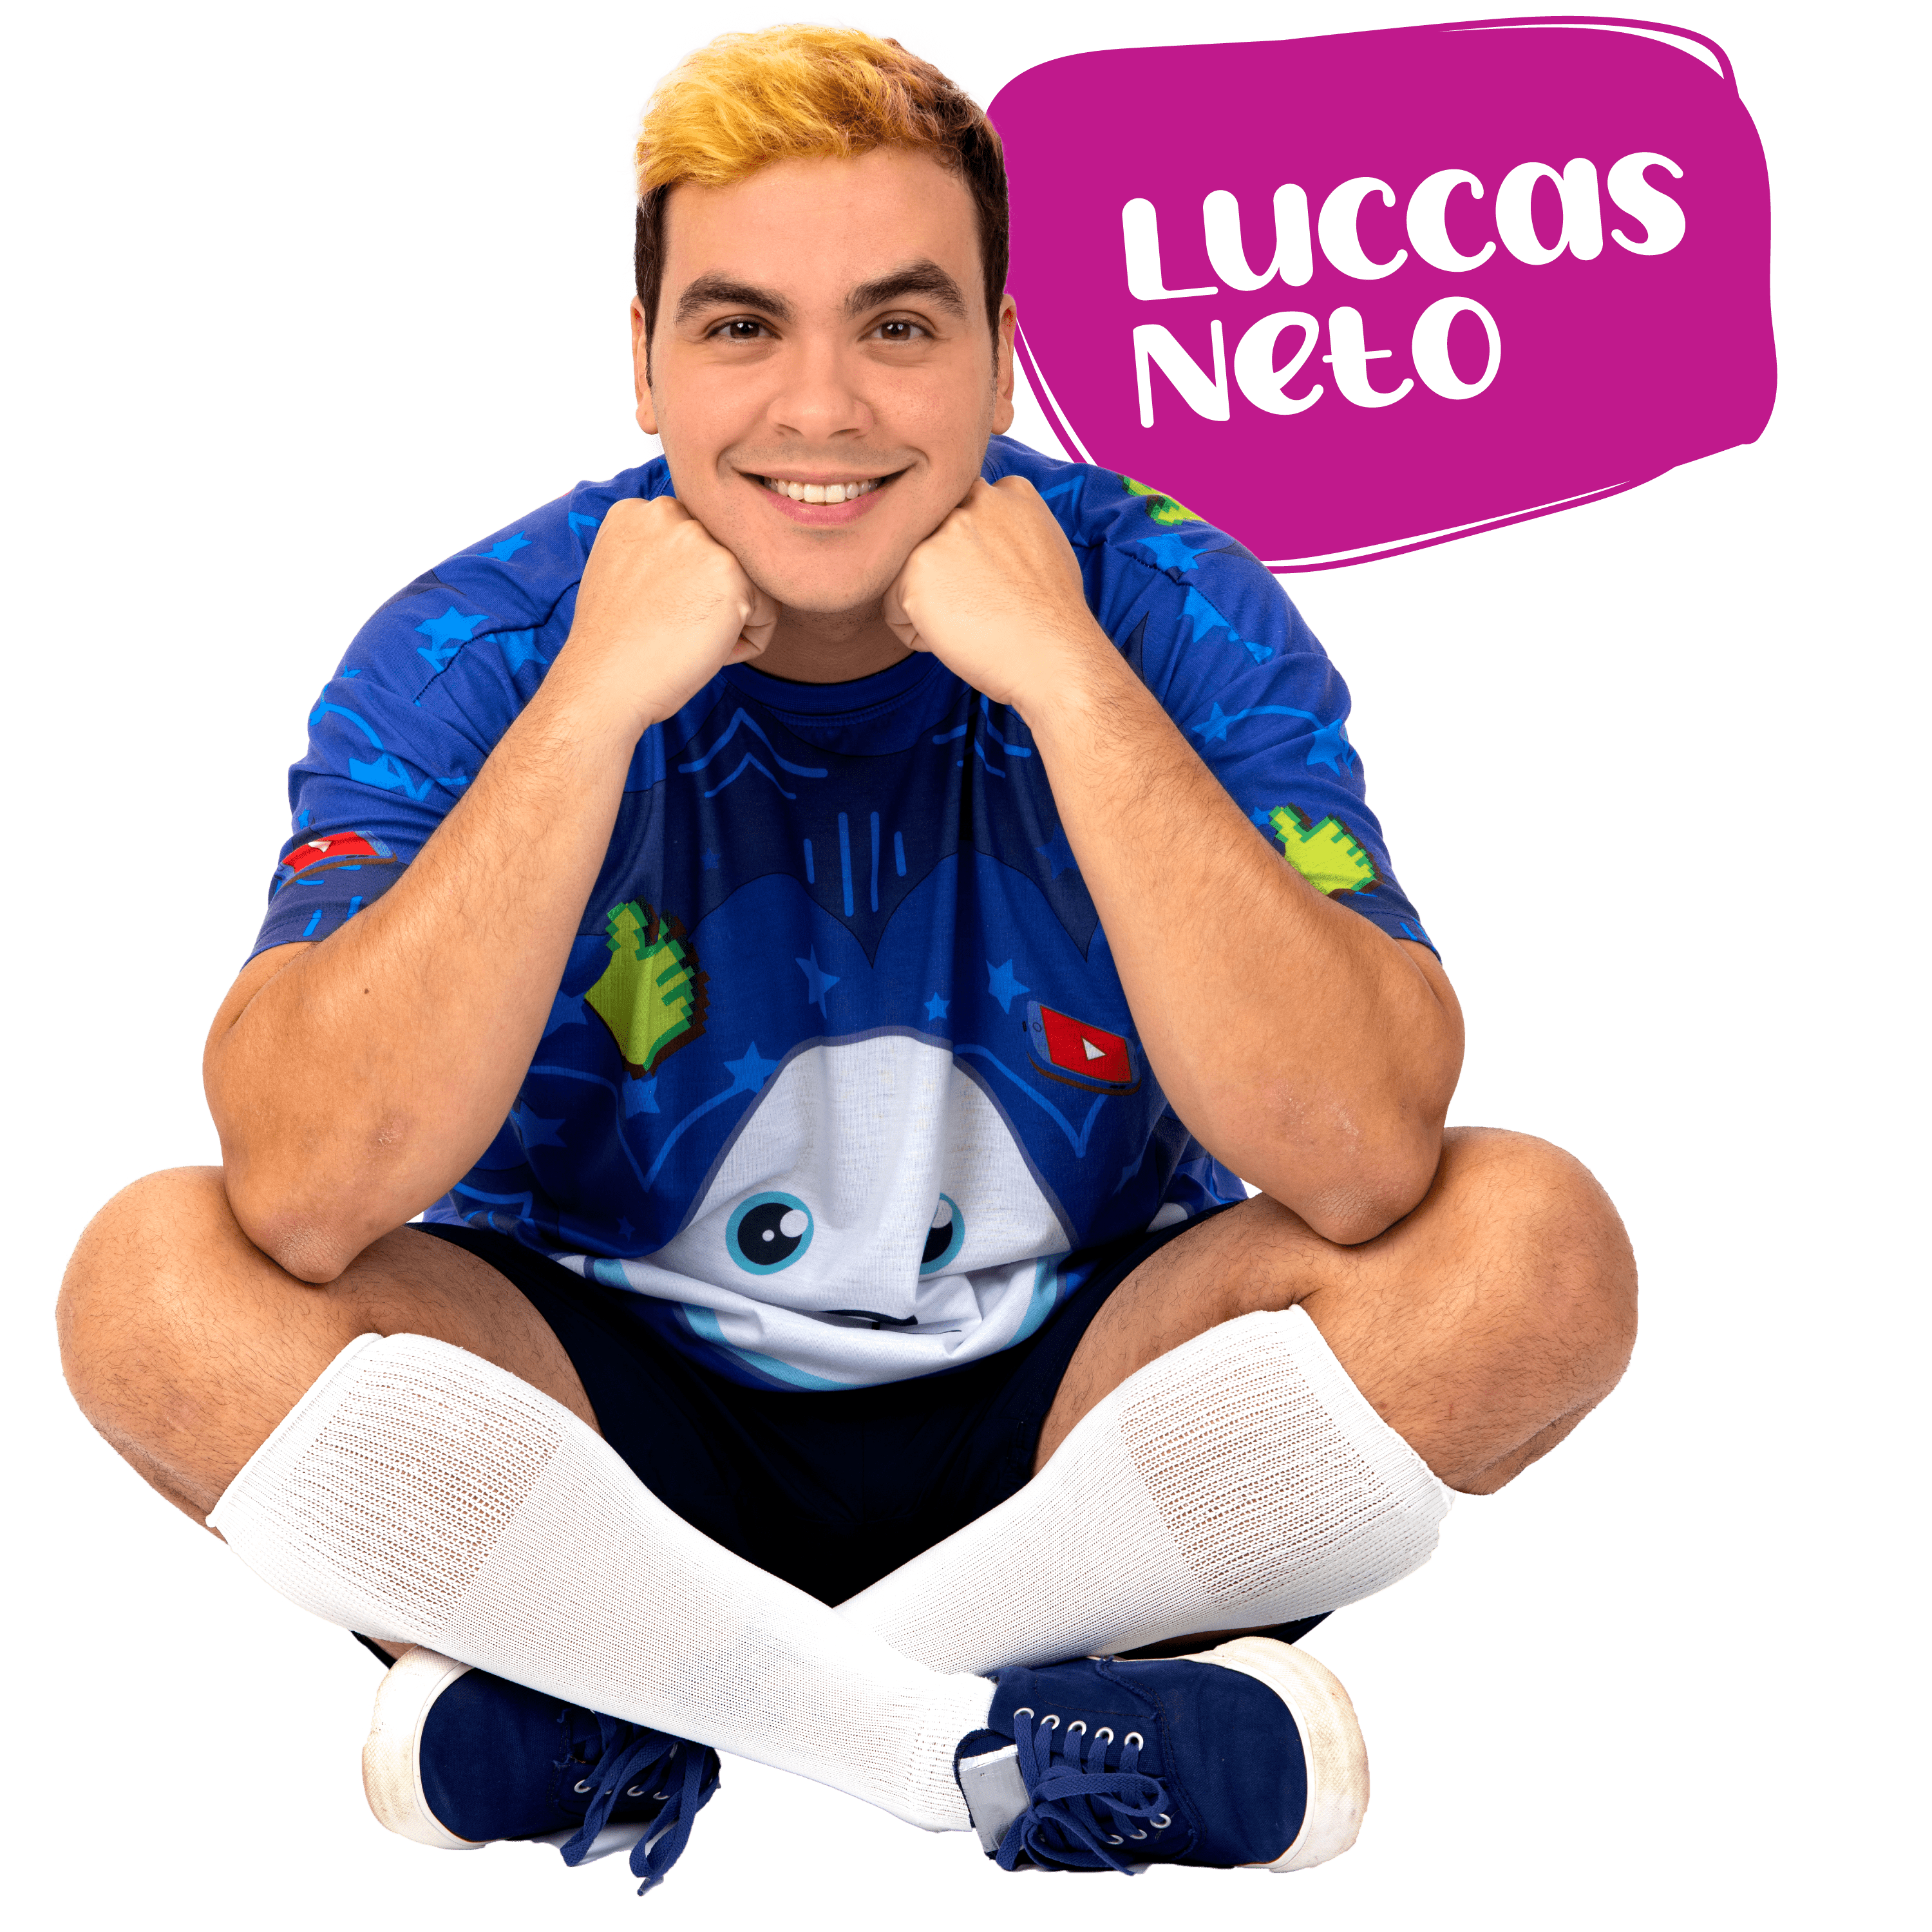 Luccas Neto Photo